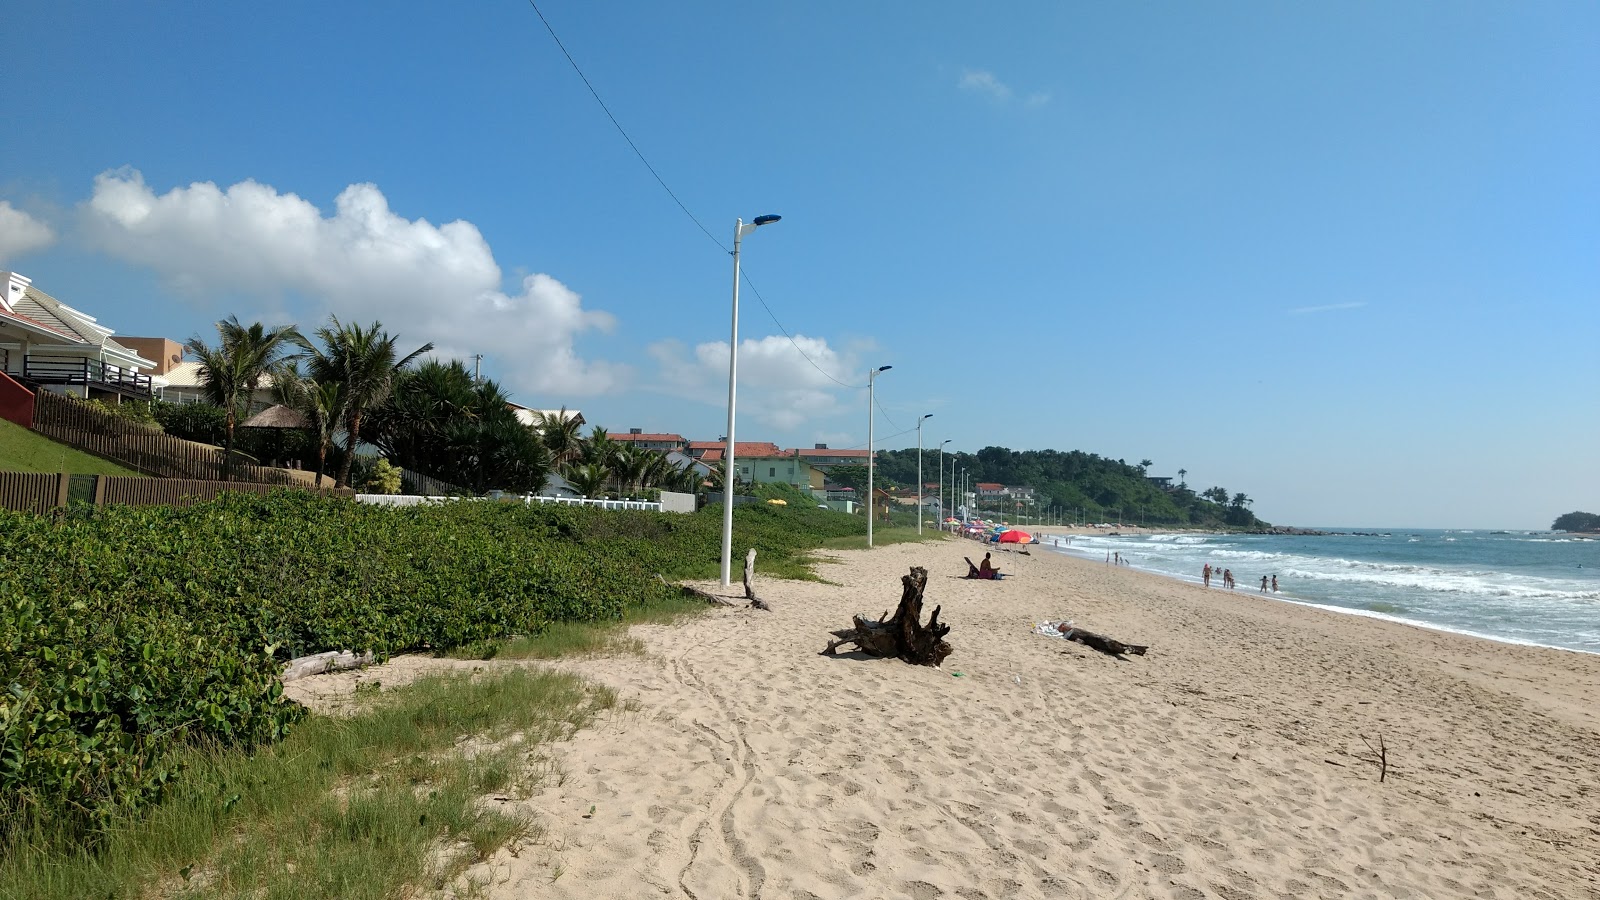 Itajuba Plajı'in fotoğrafı imkanlar alanı